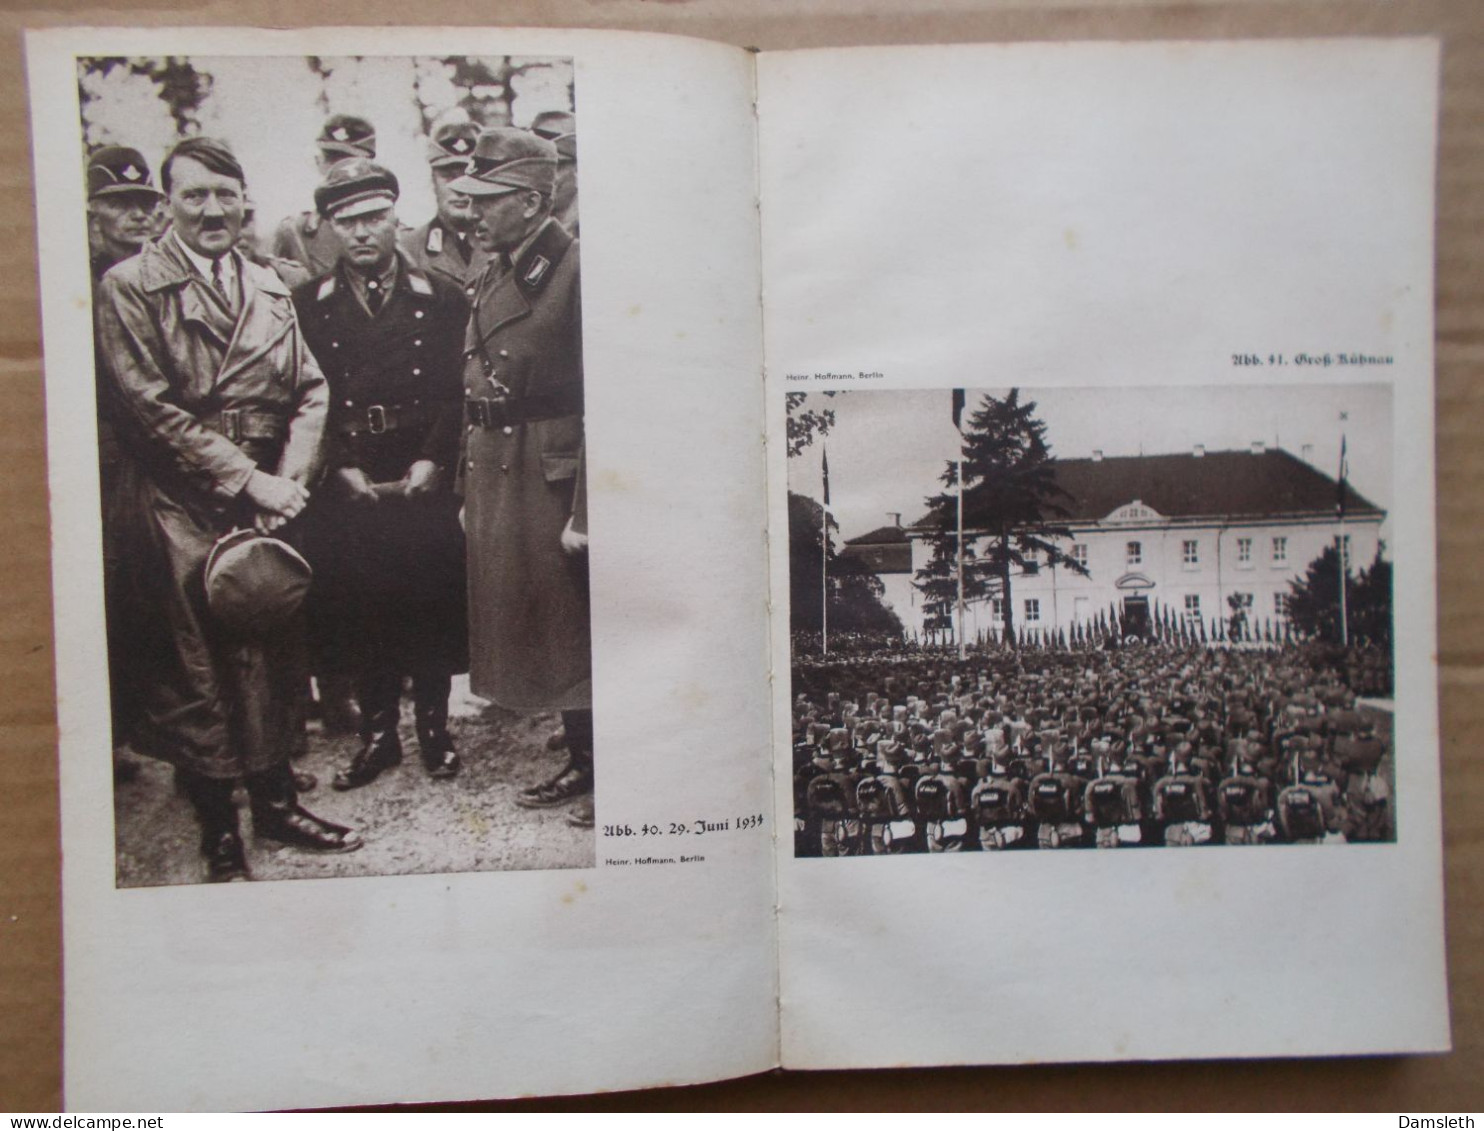 NS Deutschland 1937; Spaten und Aehre; RAD Reichsarbeitsdienst; Handbuch / Handbook; photos; NSDAP